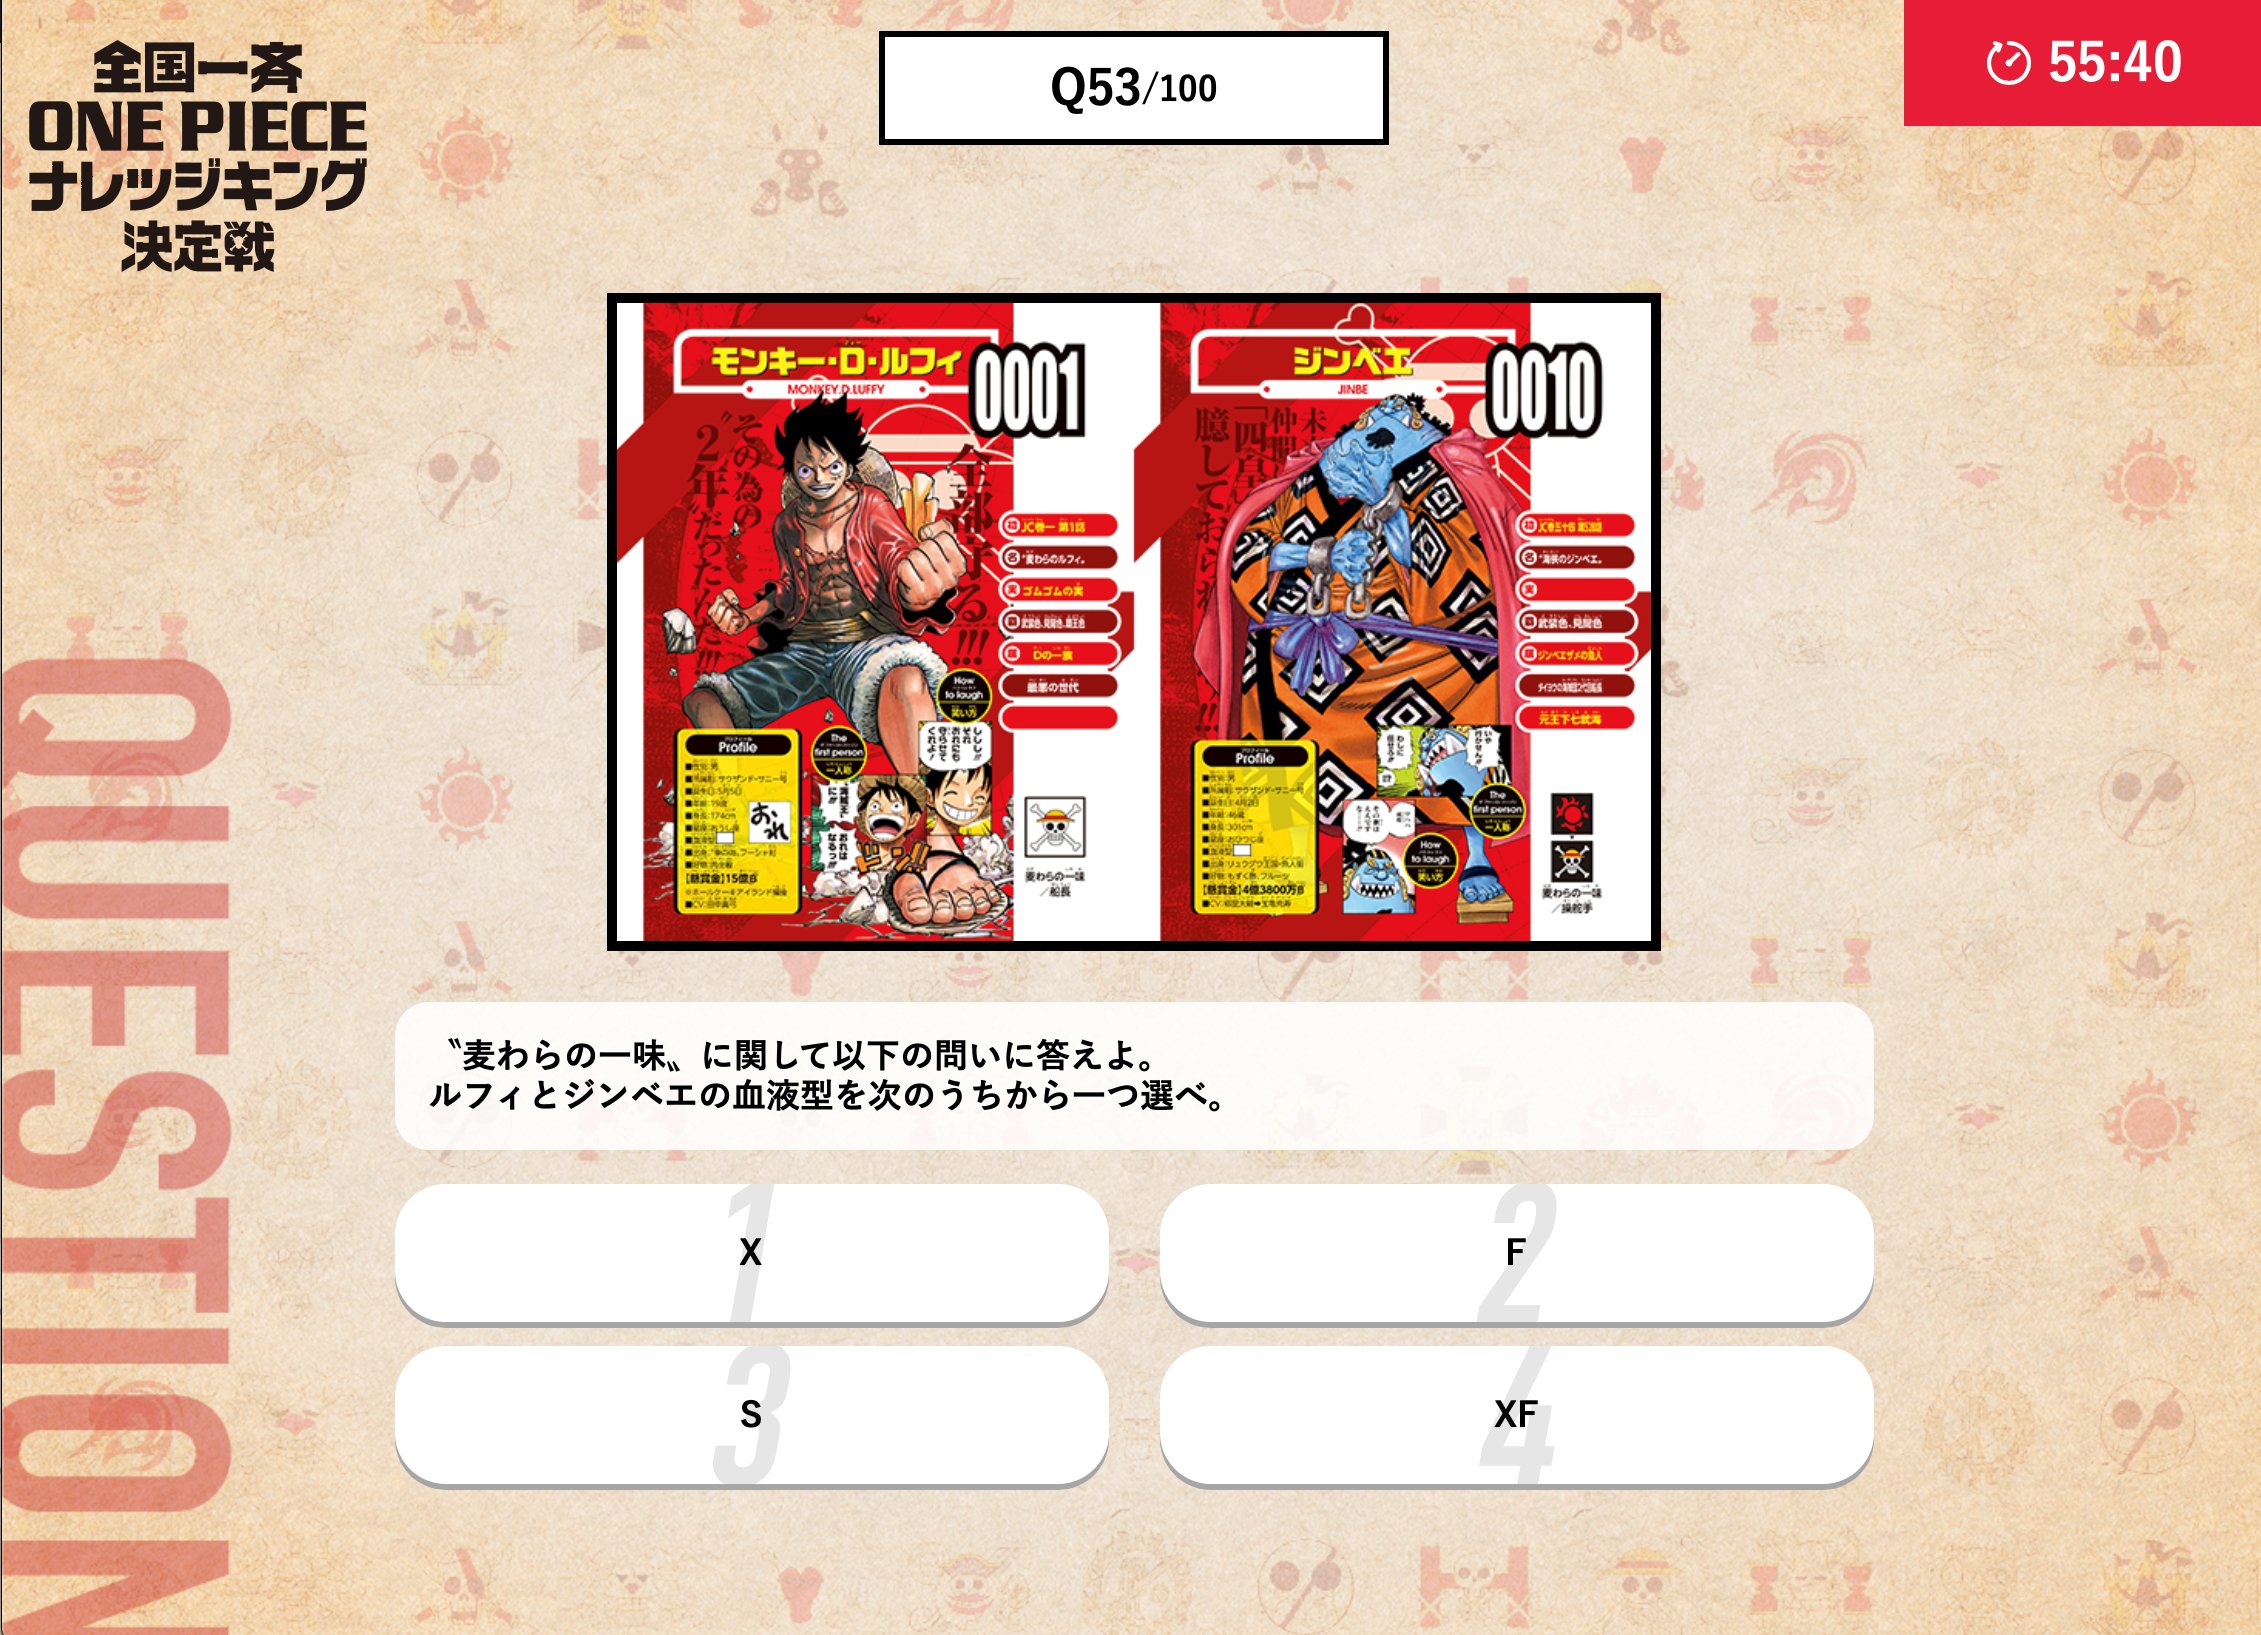 One Piece スタッフ 公式 Official 危険な状態であるルフィの為に 輸血に協力したジンベエ 二人の 血液型を覚えてますか 試験範囲のビブルカード One Piece図鑑 には キャラクターの誕生日 年齢 身長 血液型など 色んな情報がまとめられているぞ